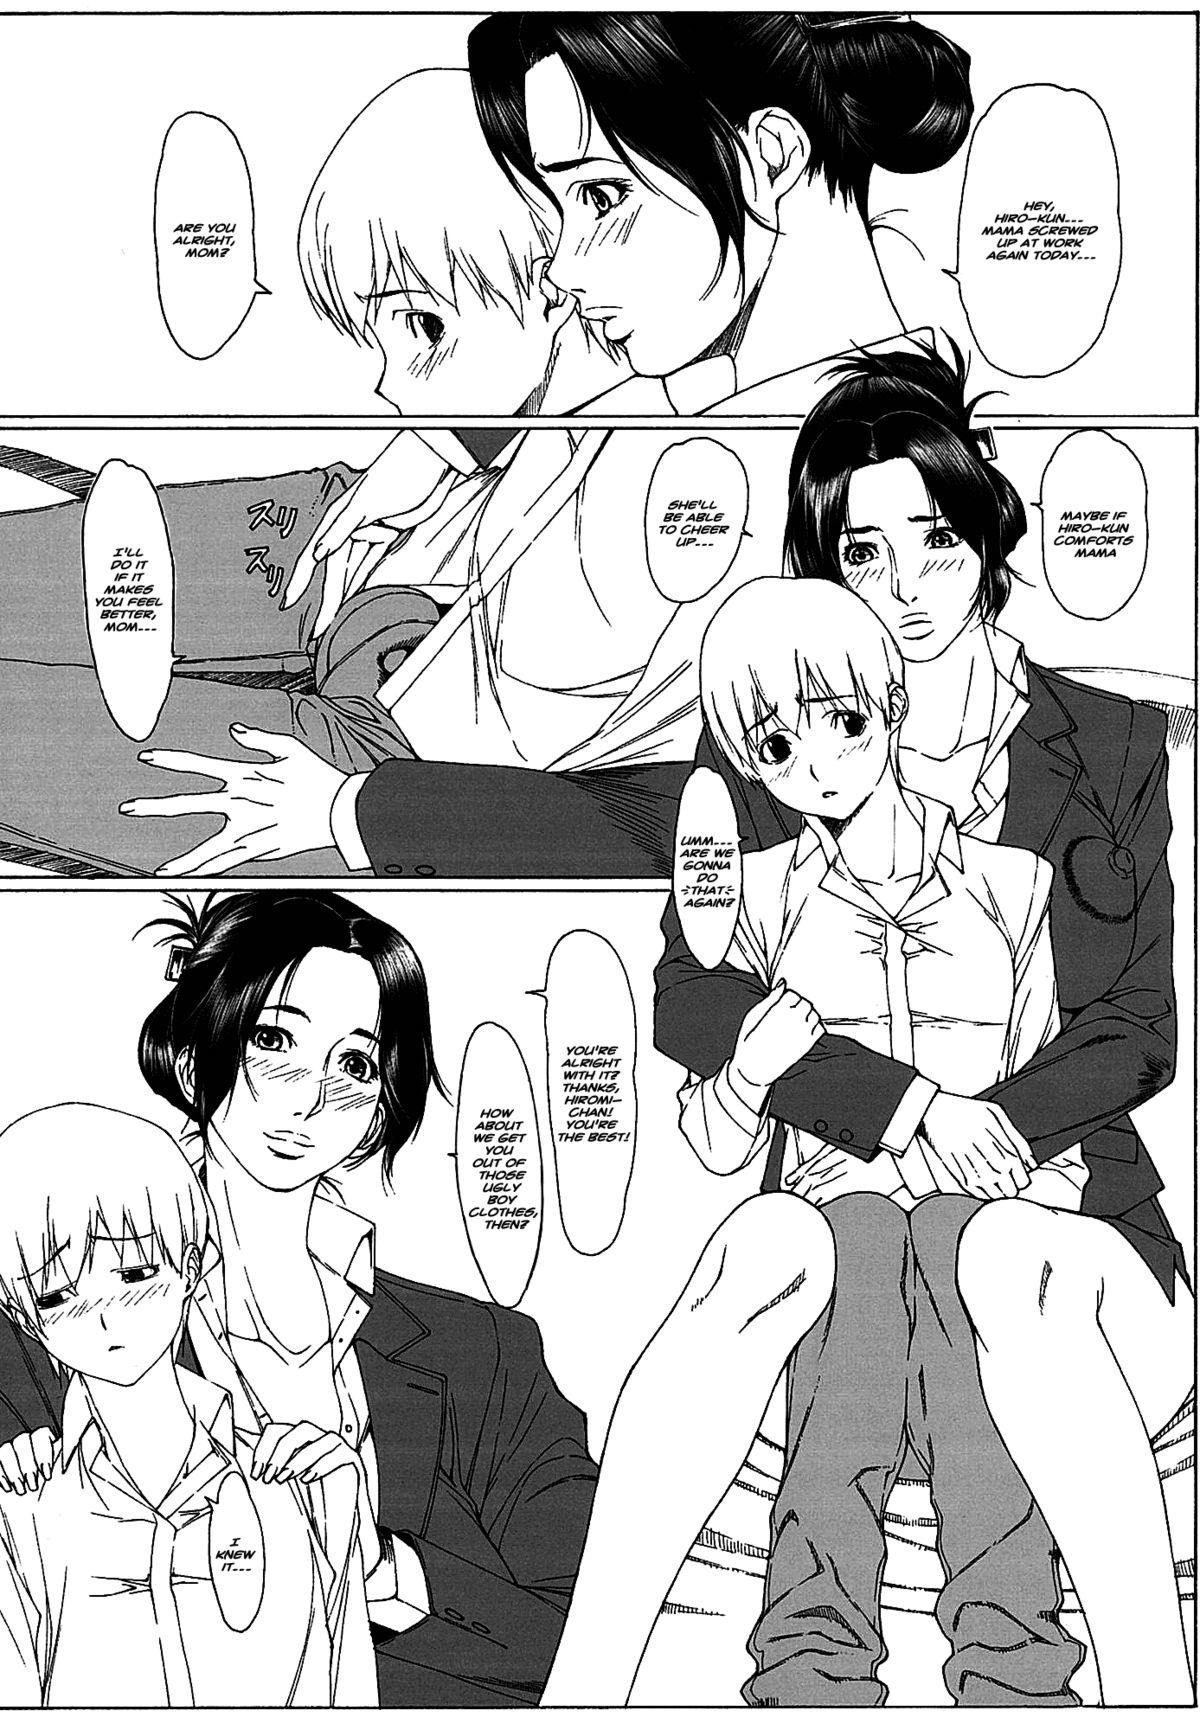 Pale Jochikousei Go. | High-School Slut #5 Rubbing - Page 3